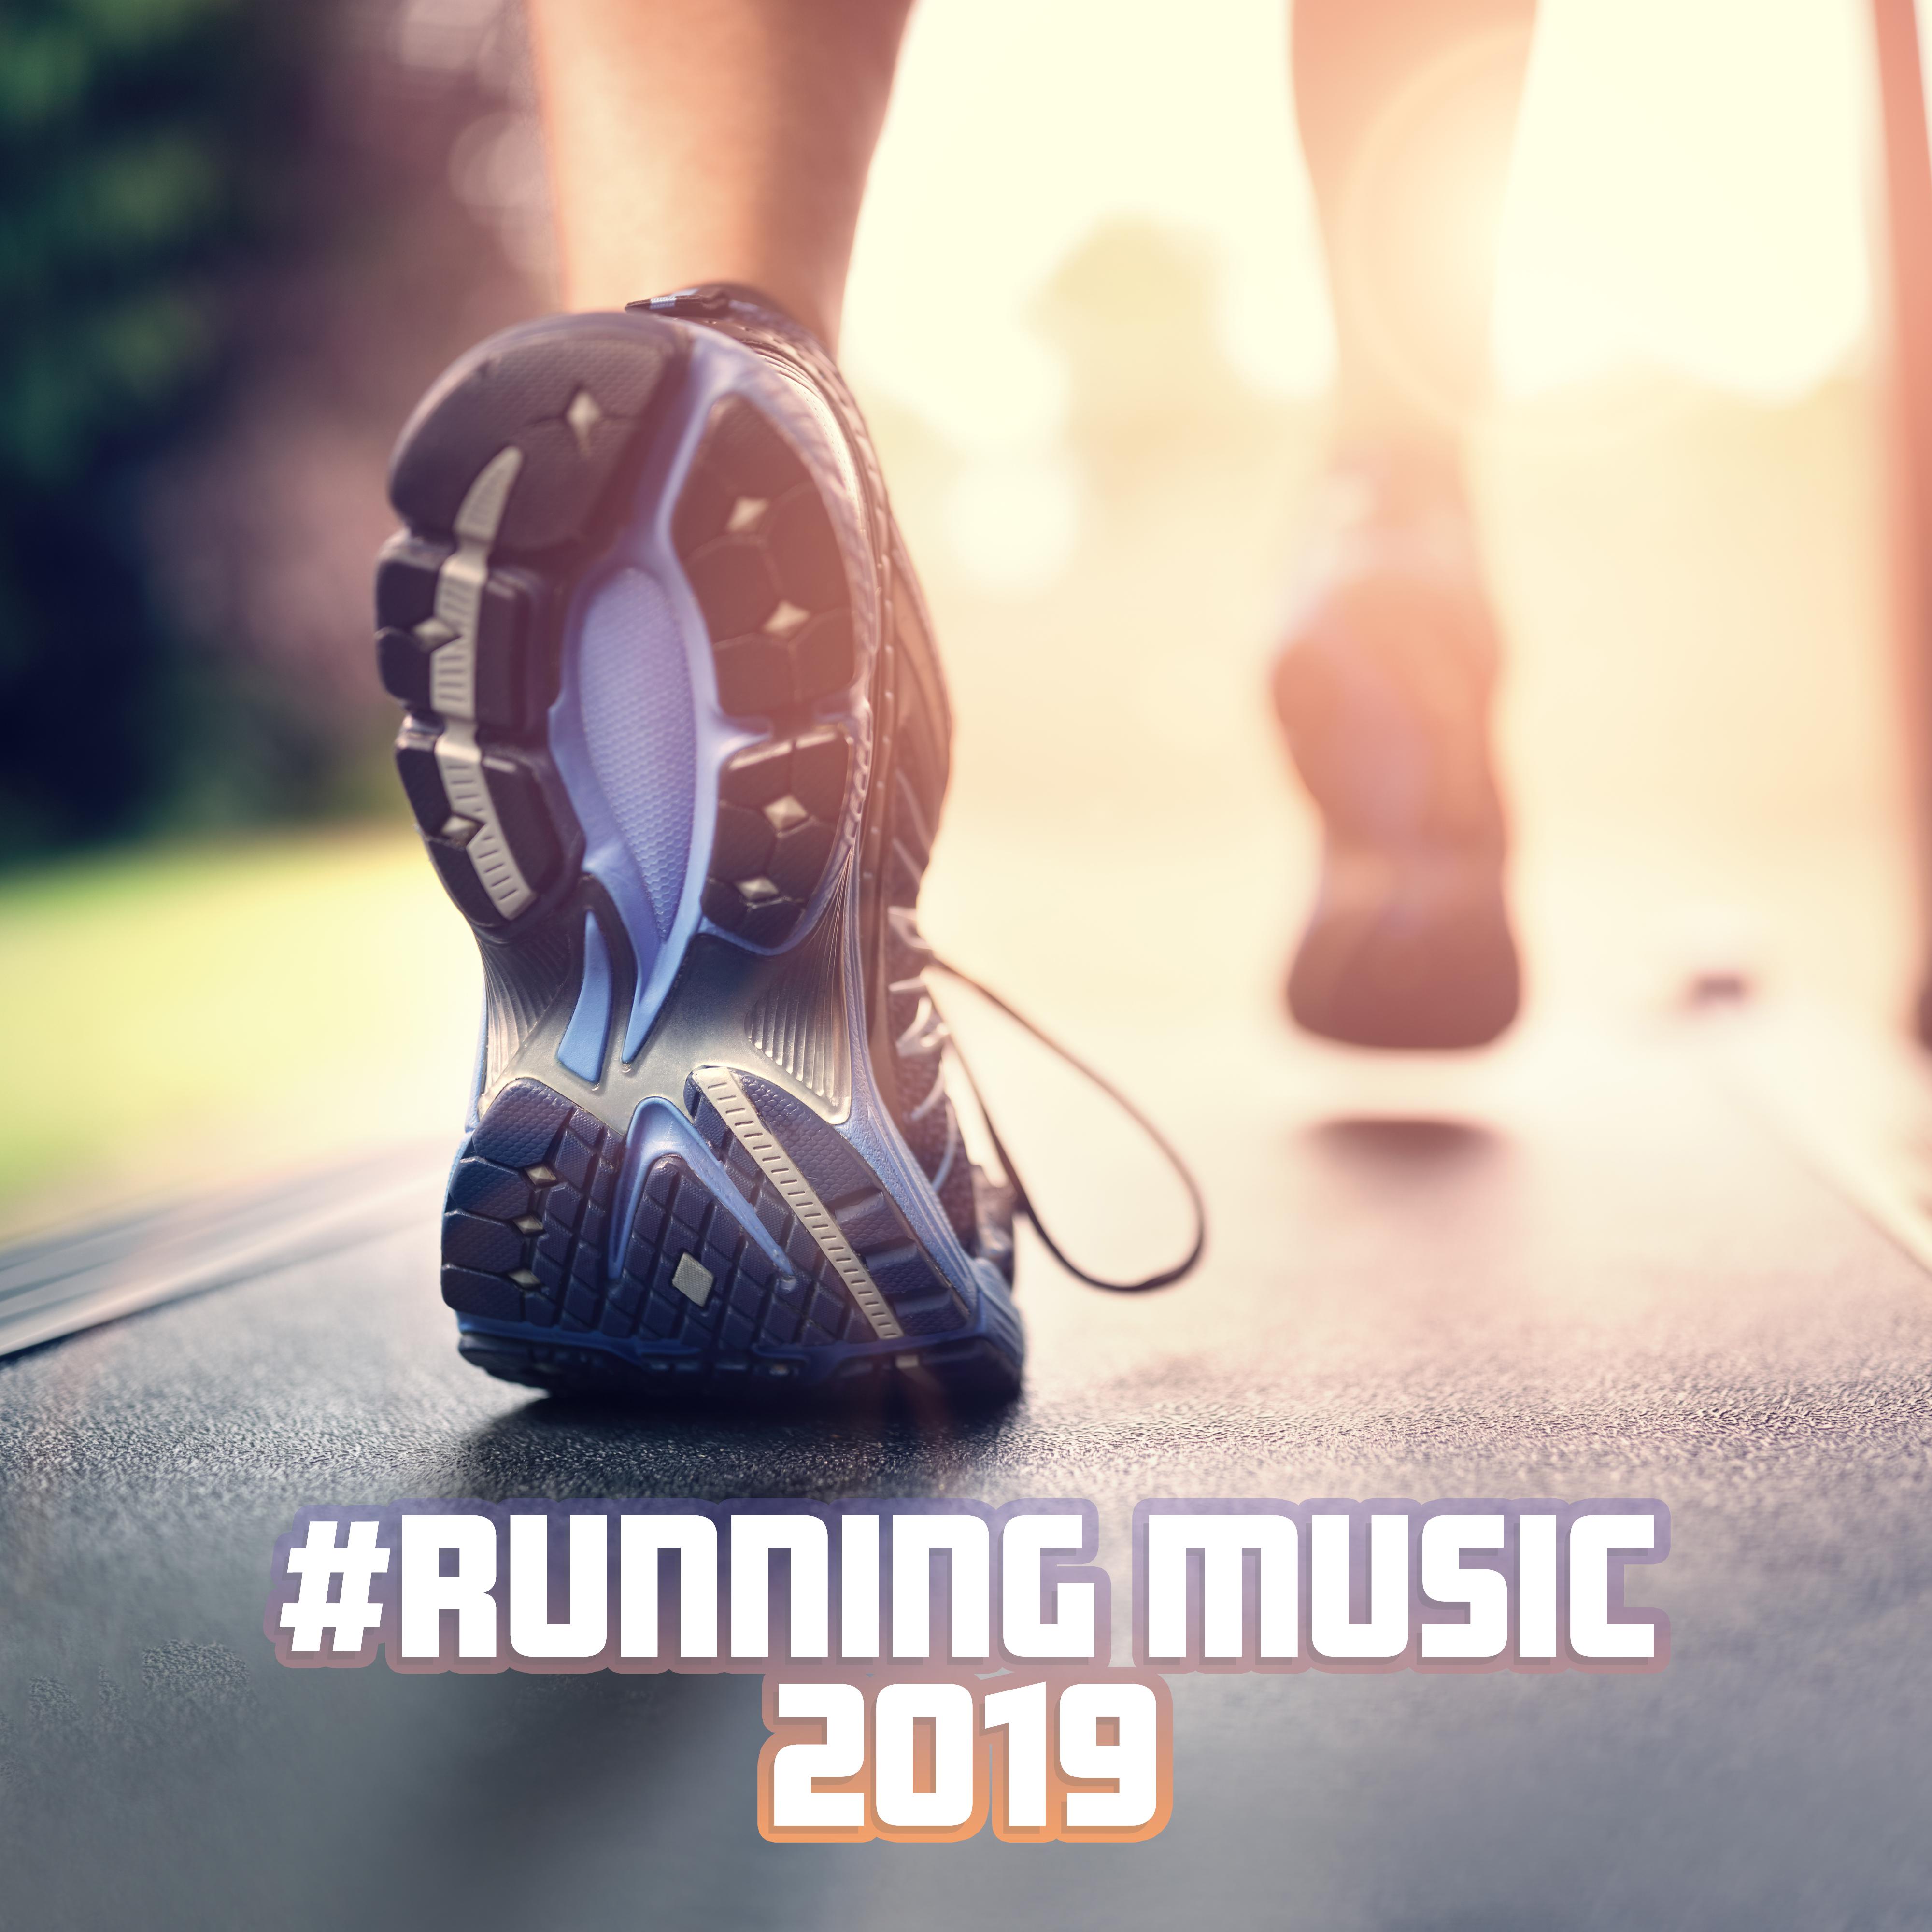 #running music 2019: Deep Relax, Running Workout, Summer Music for Training, Reduce Stress